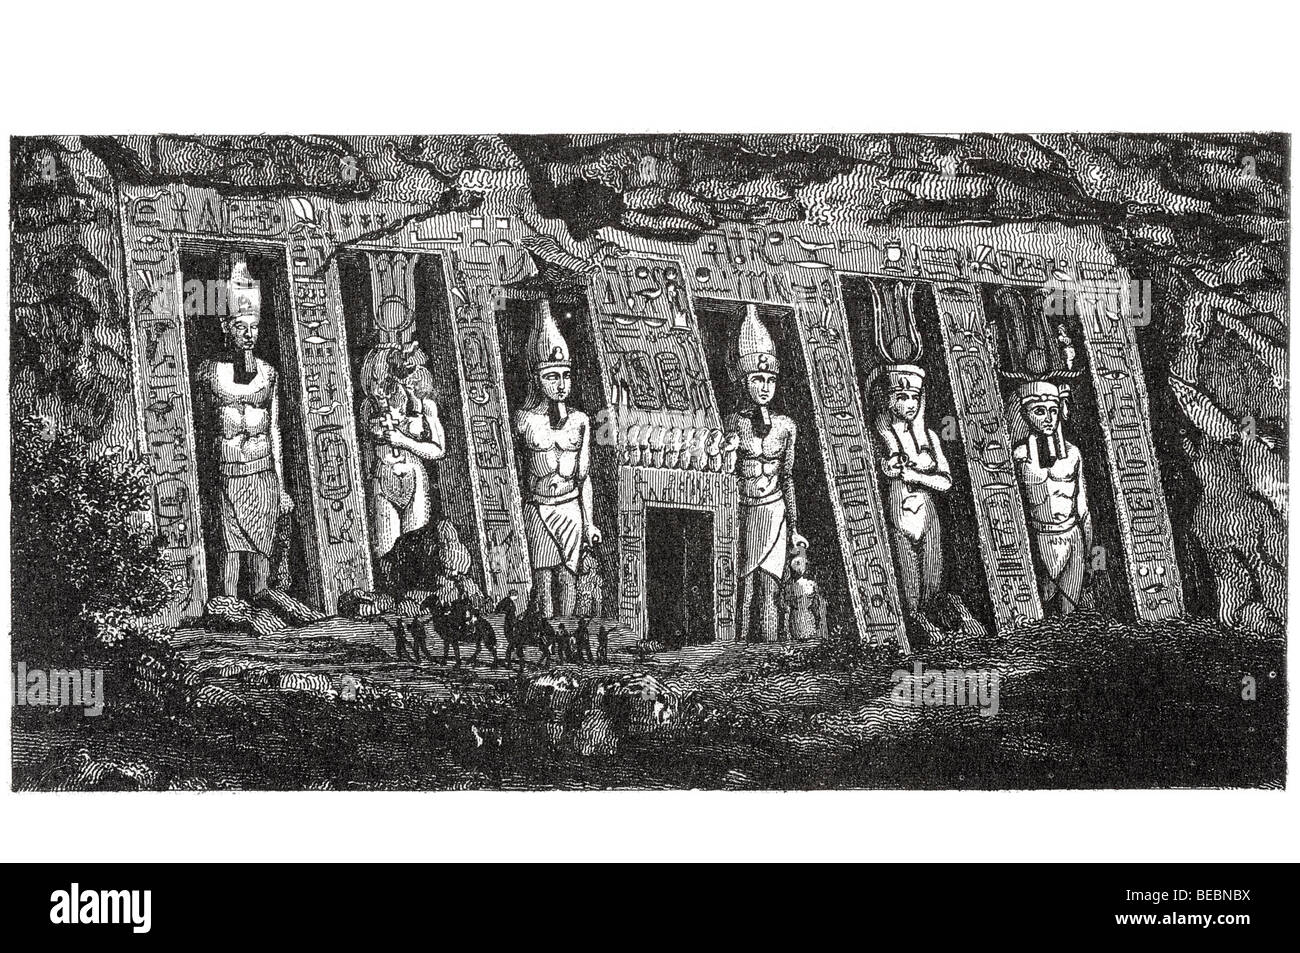 La fachada del templo de Hathor en ipsambul Foto de stock